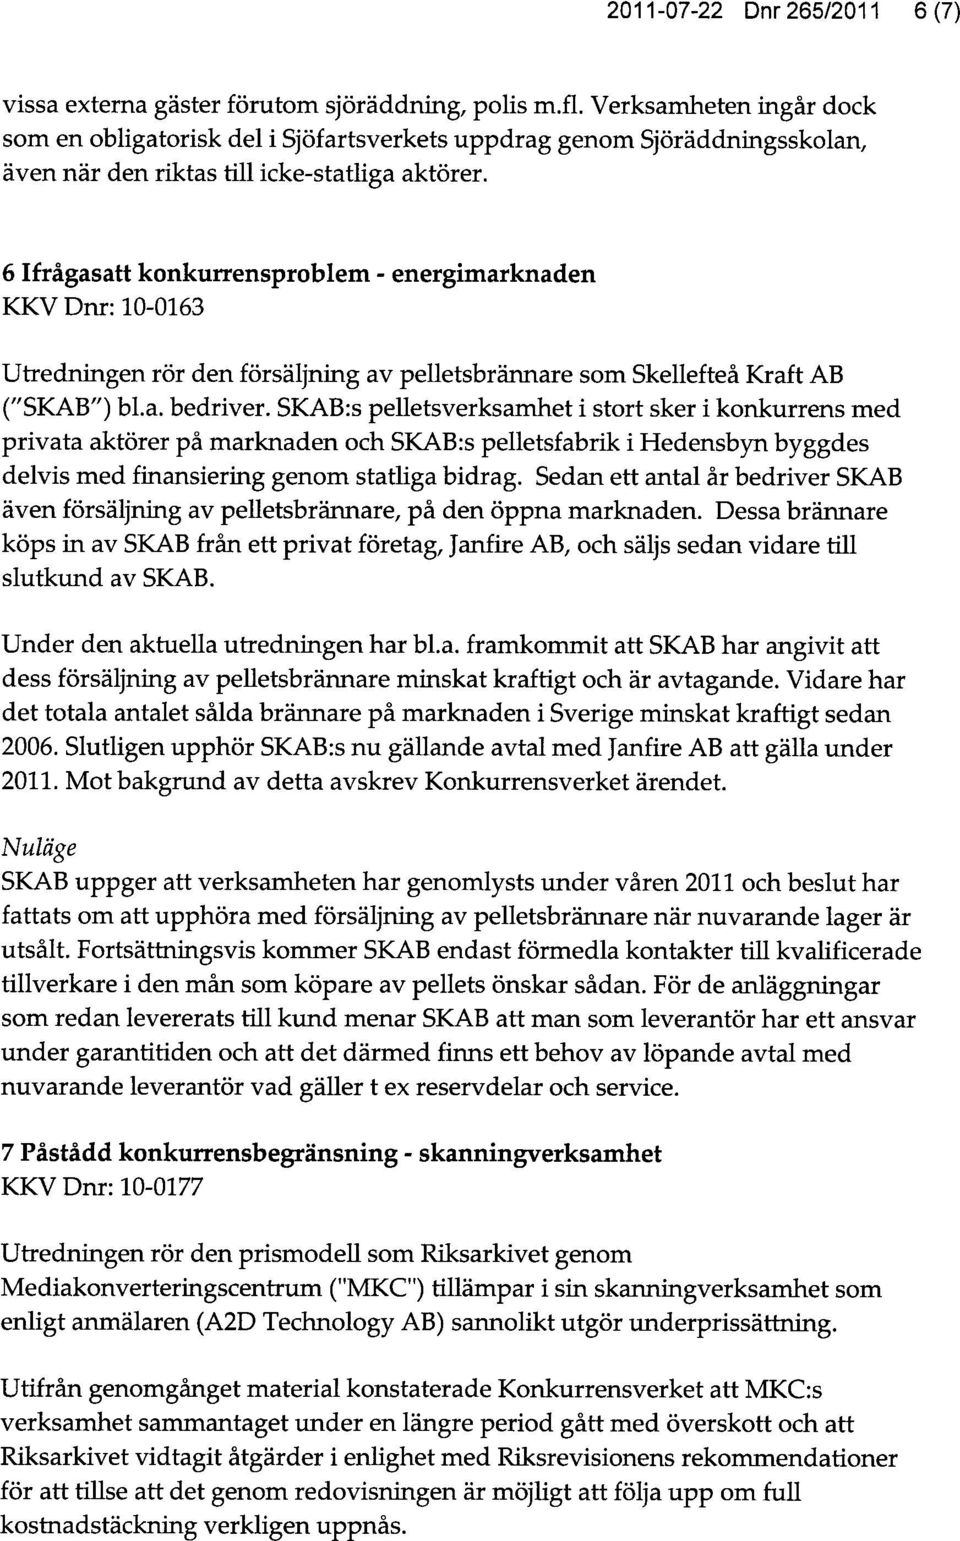 6 Ifrågasatt konkurrensproblem - energimarknaden KKV Dnr: 10-0163 Utredningen rör den försäljning av pelletsbrännare som Skellefteå Kraft AB ("SKAB") bl.a. bedriver.